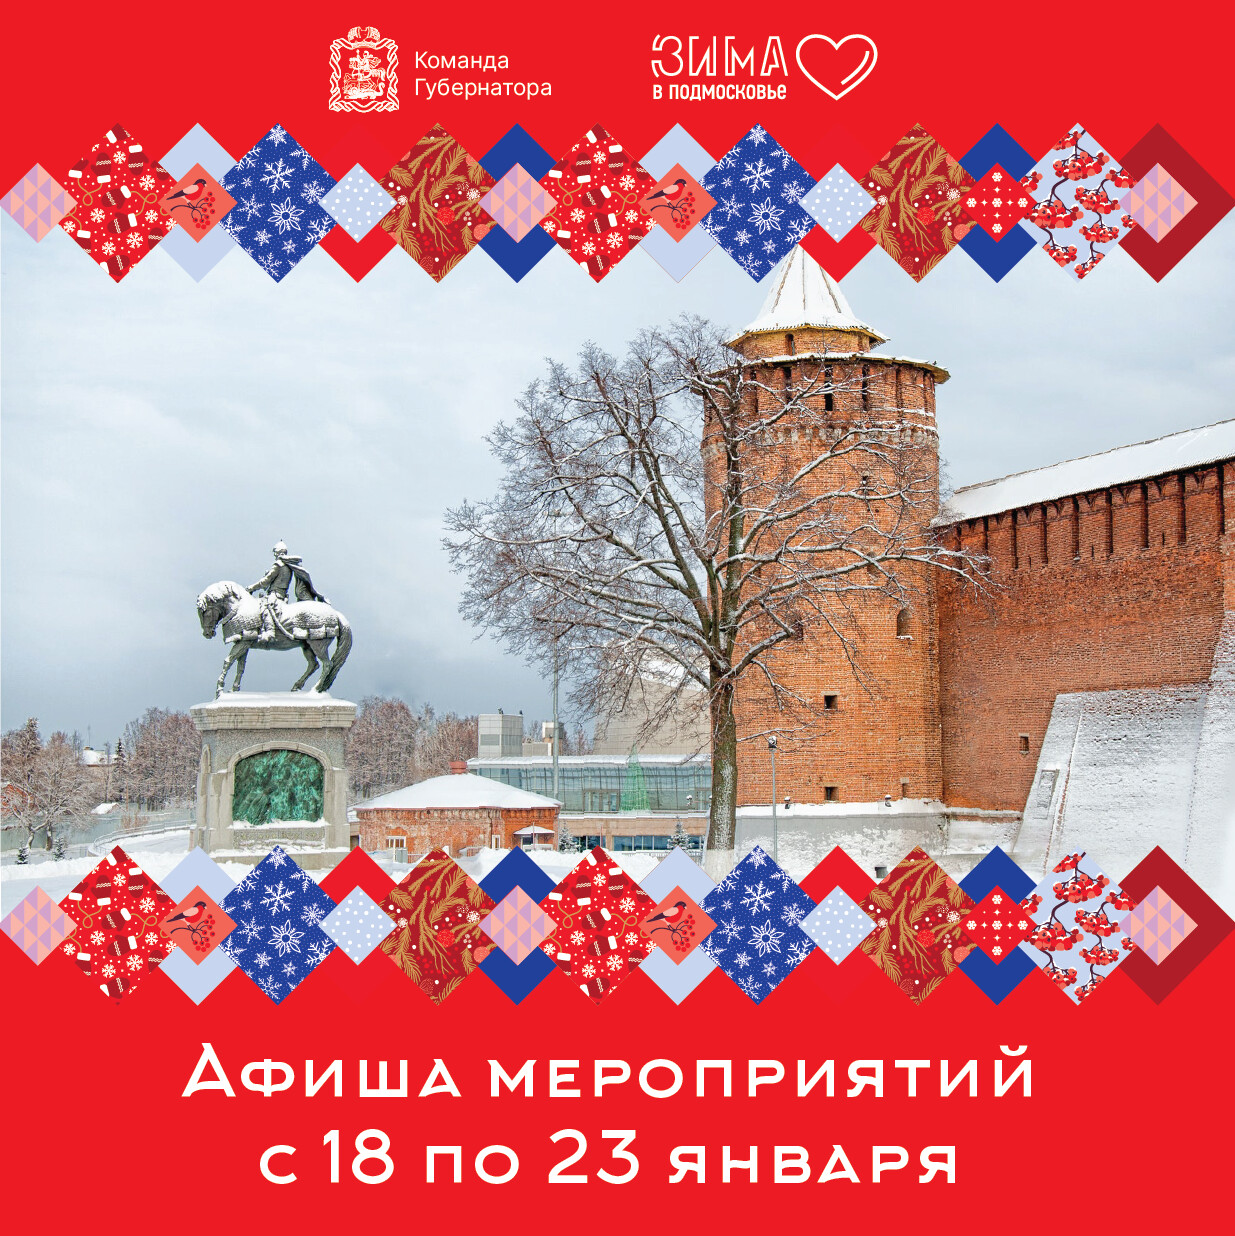 Афиша мероприятий в рамках проекта «Зима в Подмосковье» с 18 по 23 января